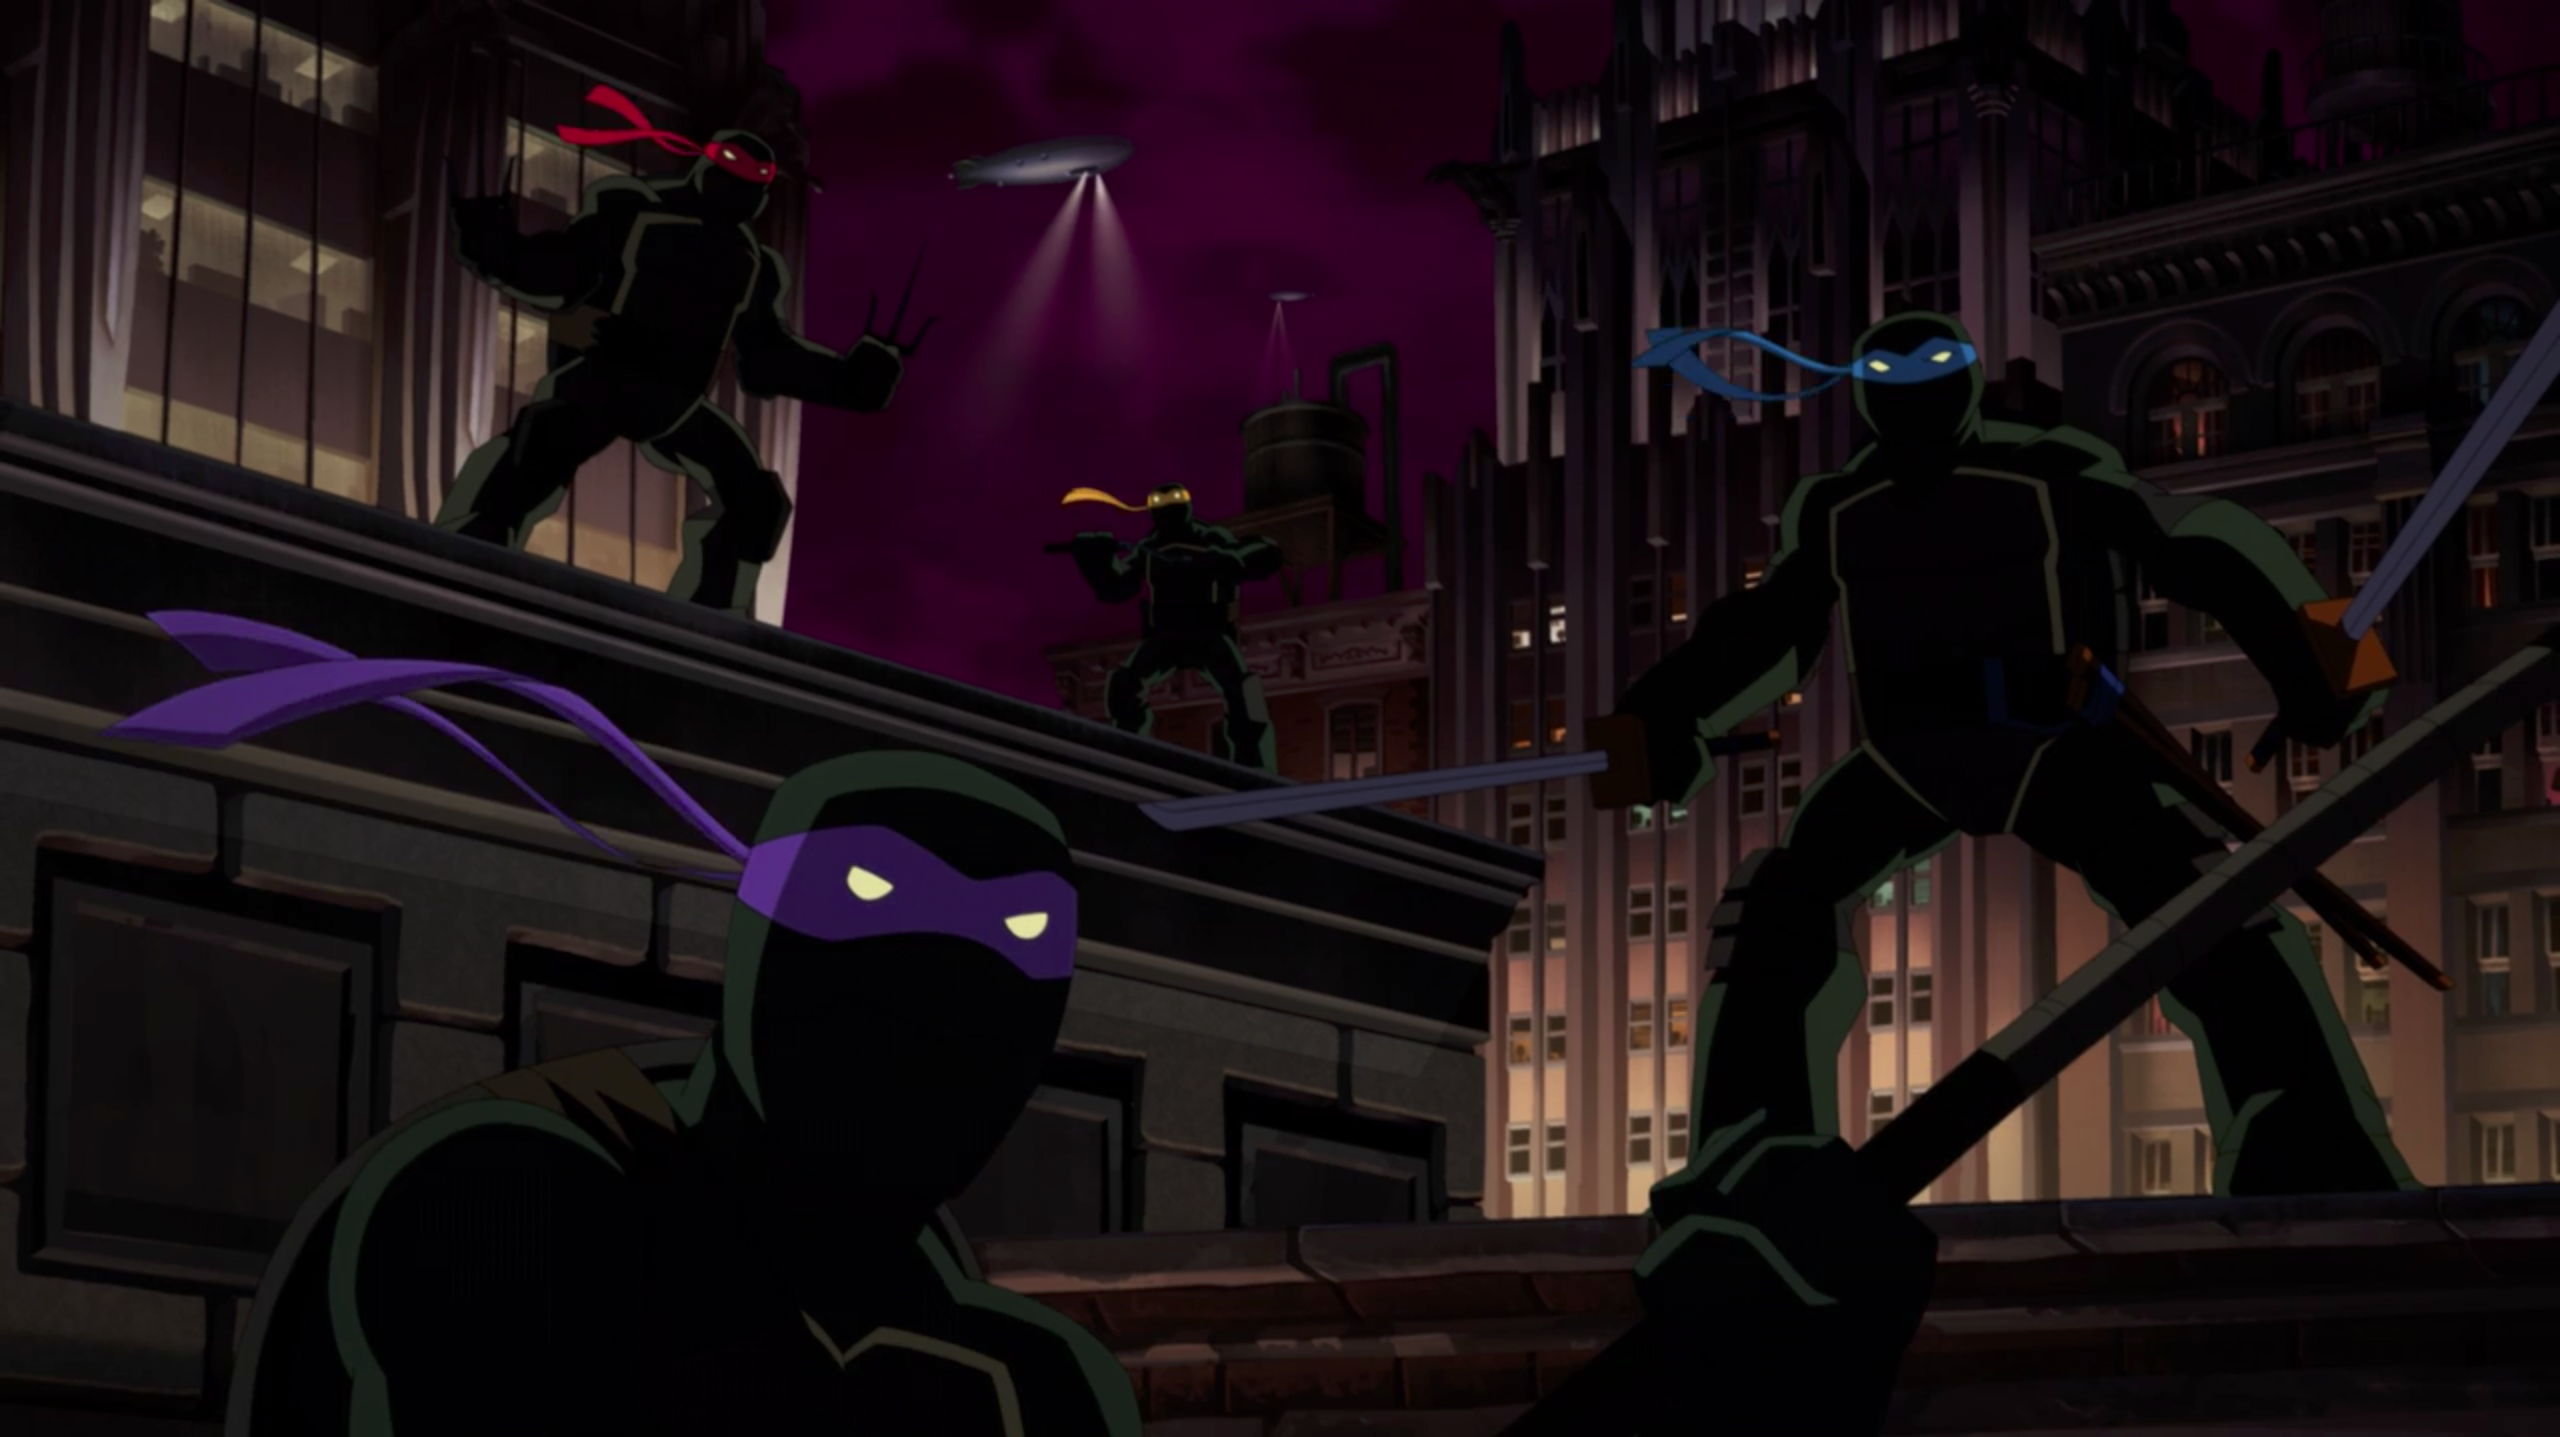 Batman Vs Teenage Mutant Ninja Turtles | Traditional Animation